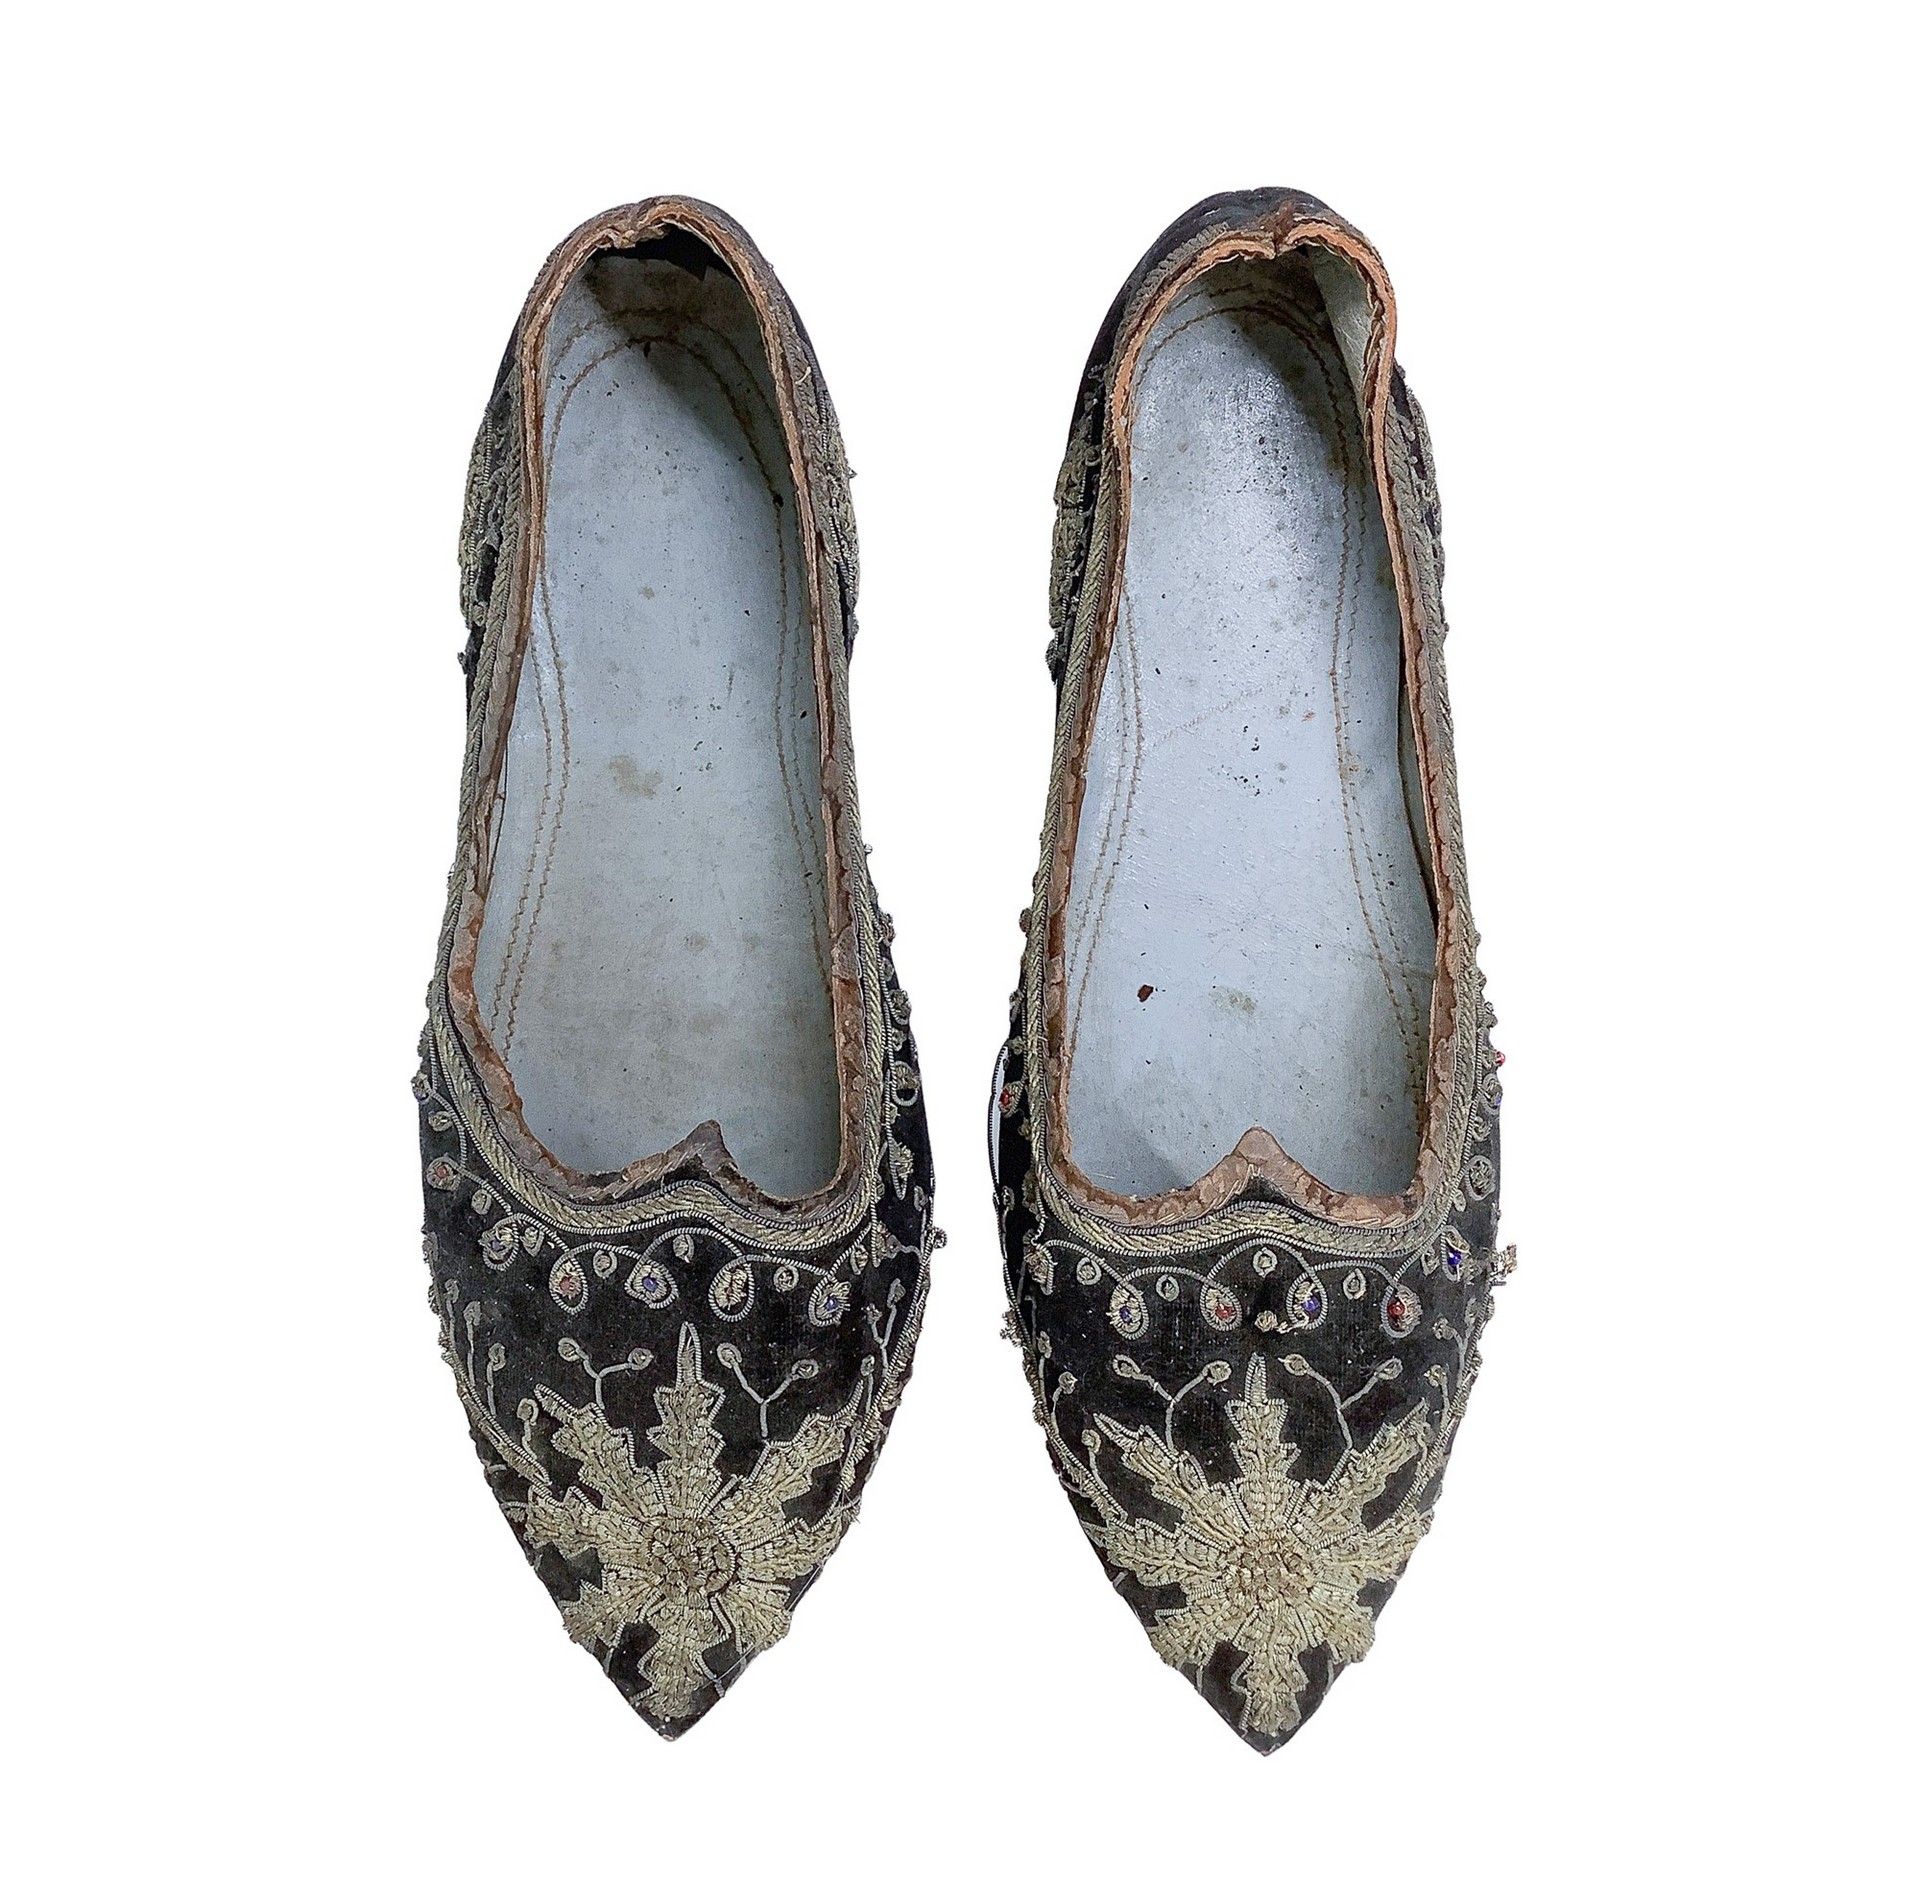 Null Zapatillas vintage , Zapatos nobles bordados de principios del siglo XIX